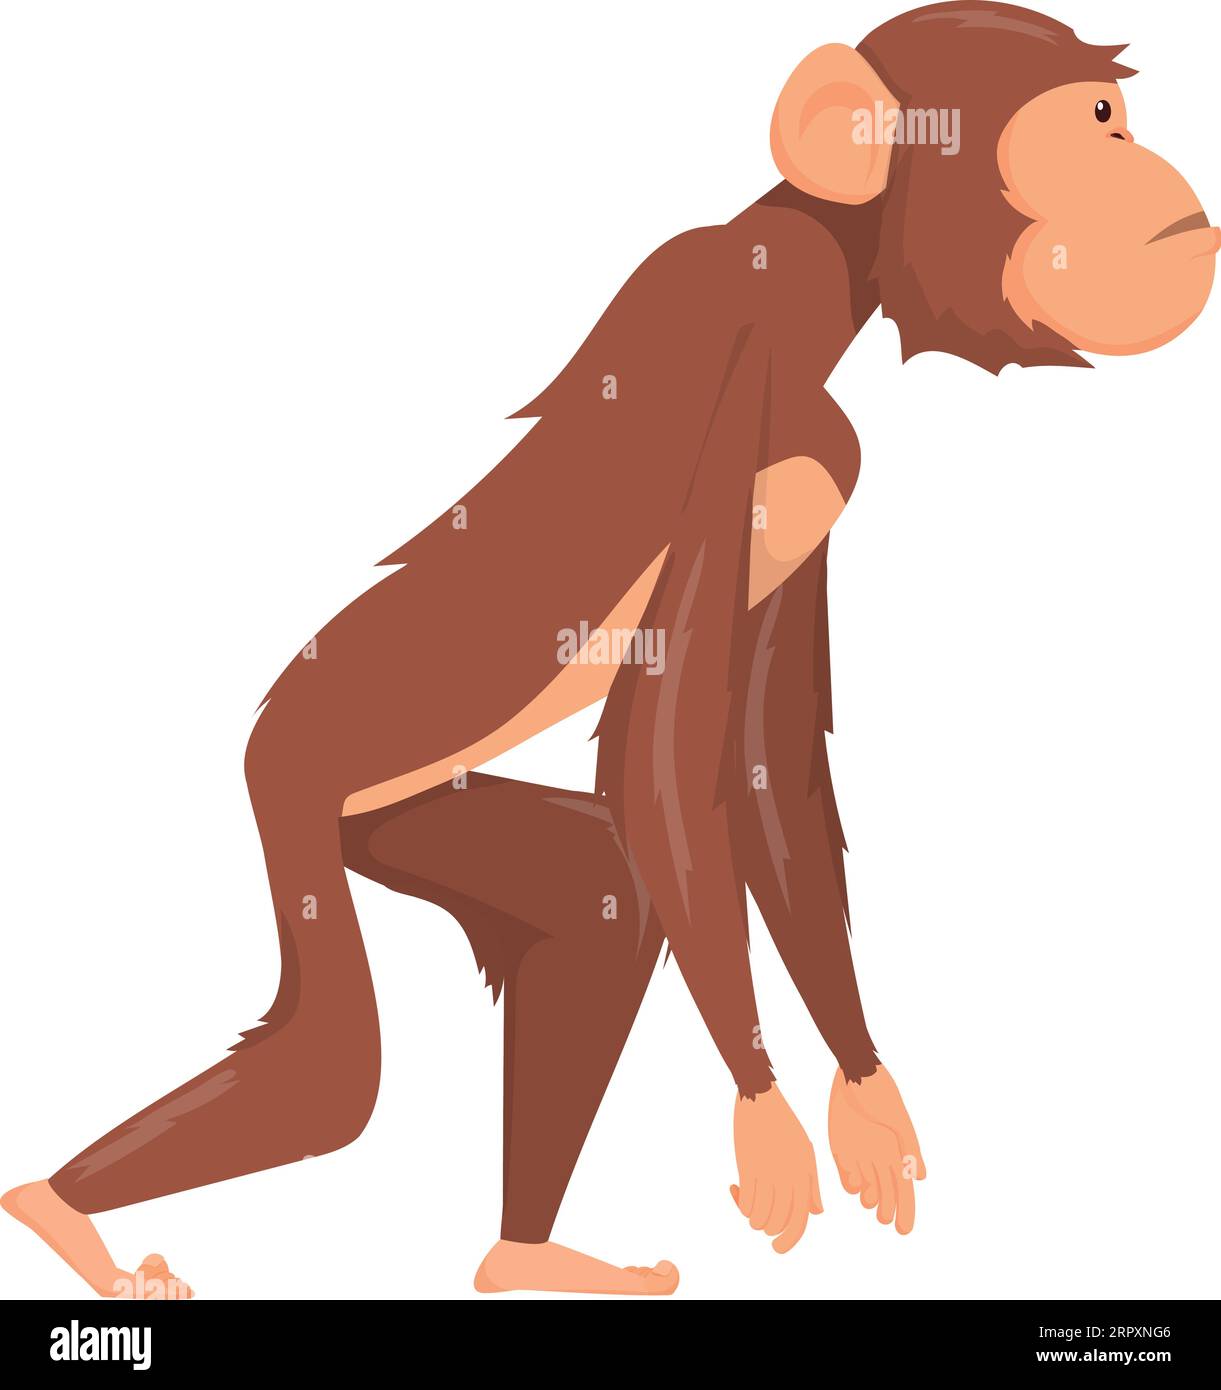 Vue latérale primate. Animal marchant. Chimpanzé de dessin animé Illustration de Vecteur